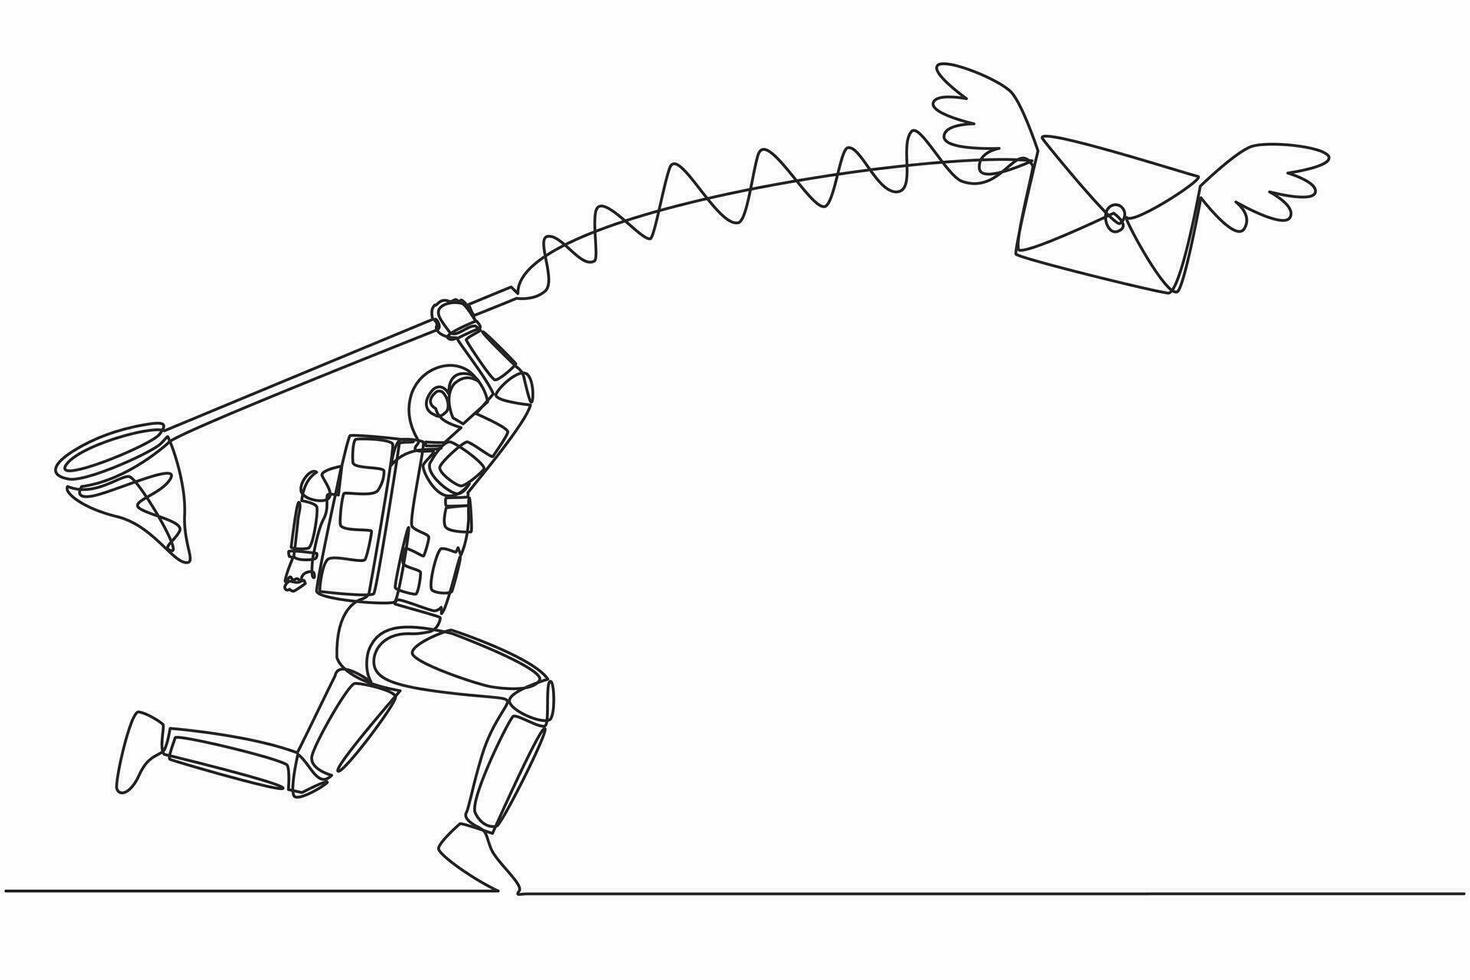 kontinuierlich einer Linie Zeichnung von jung Astronaut Versuchen zu fangen fliegend Mail mit Schmetterling Netz. Botschaft von Raumschiff Erkundung. Kosmonaut äußere Raum. Single Linie Grafik Design Vektor Illustration